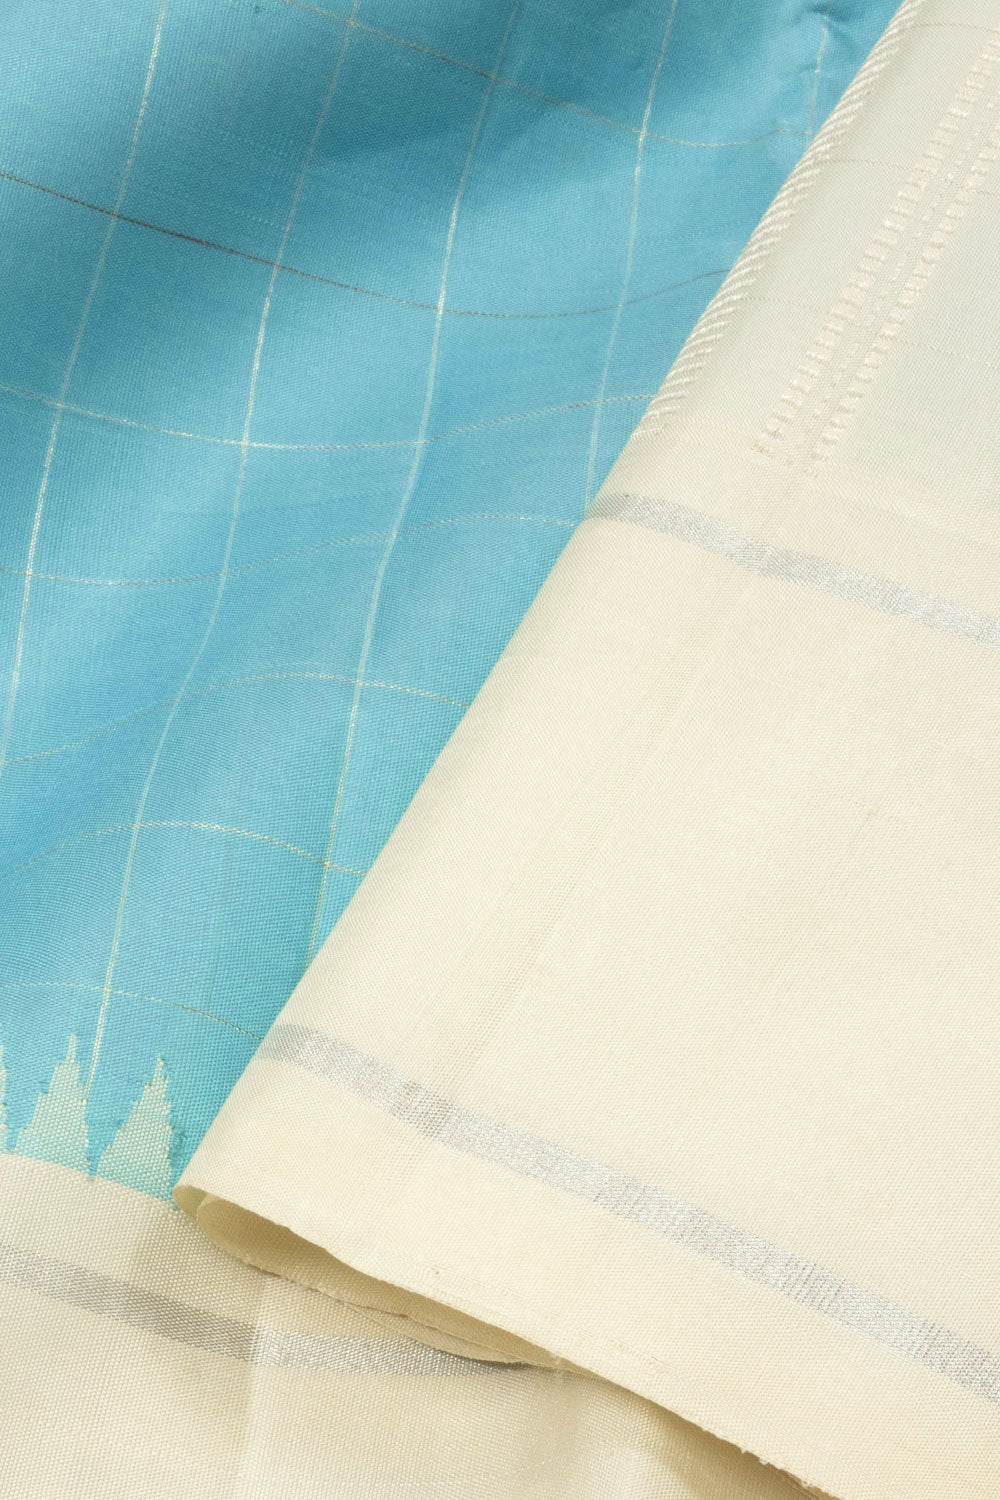 Blue Bridal Handloom Kanjivaram Silk Saree - Avishya